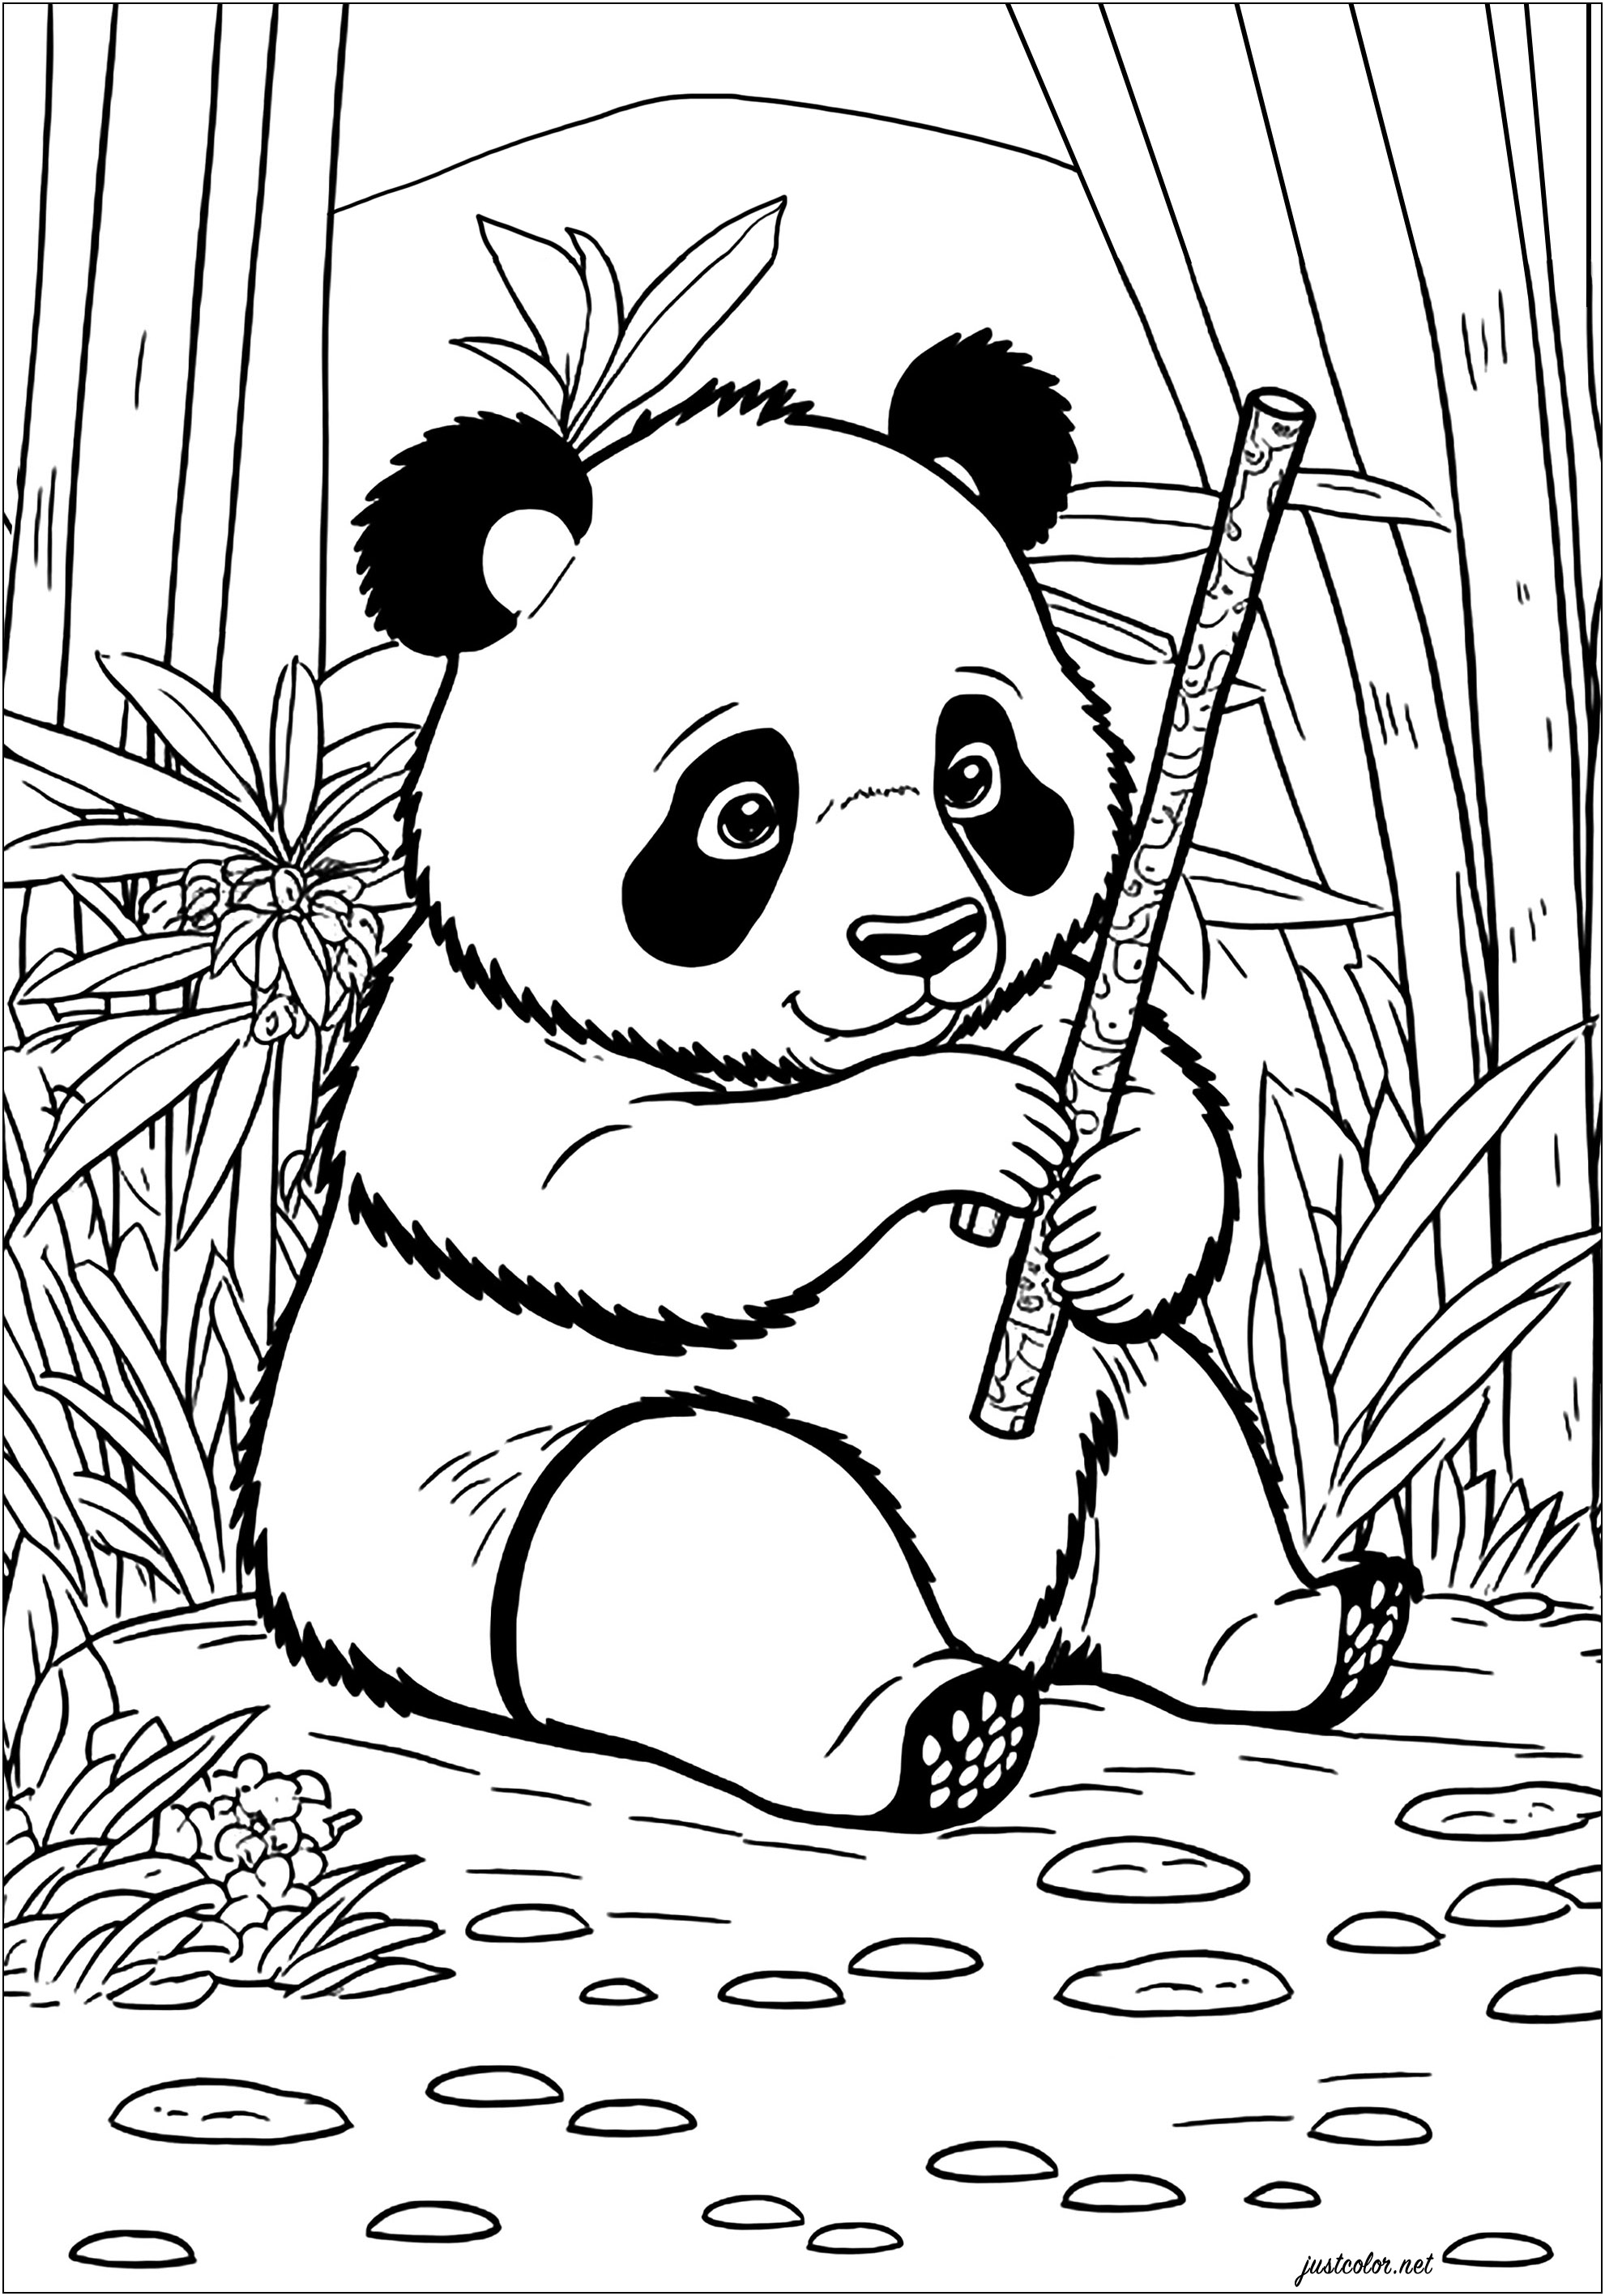 Giovane panda che mangia il bambù. Questo panda dalle guance rotonde e dall'espressione giocosa siede in una lussureggiante foresta piena di alti alberi di bambù. Mangia volentieri un gambo di bambù, sembra molto affamato!